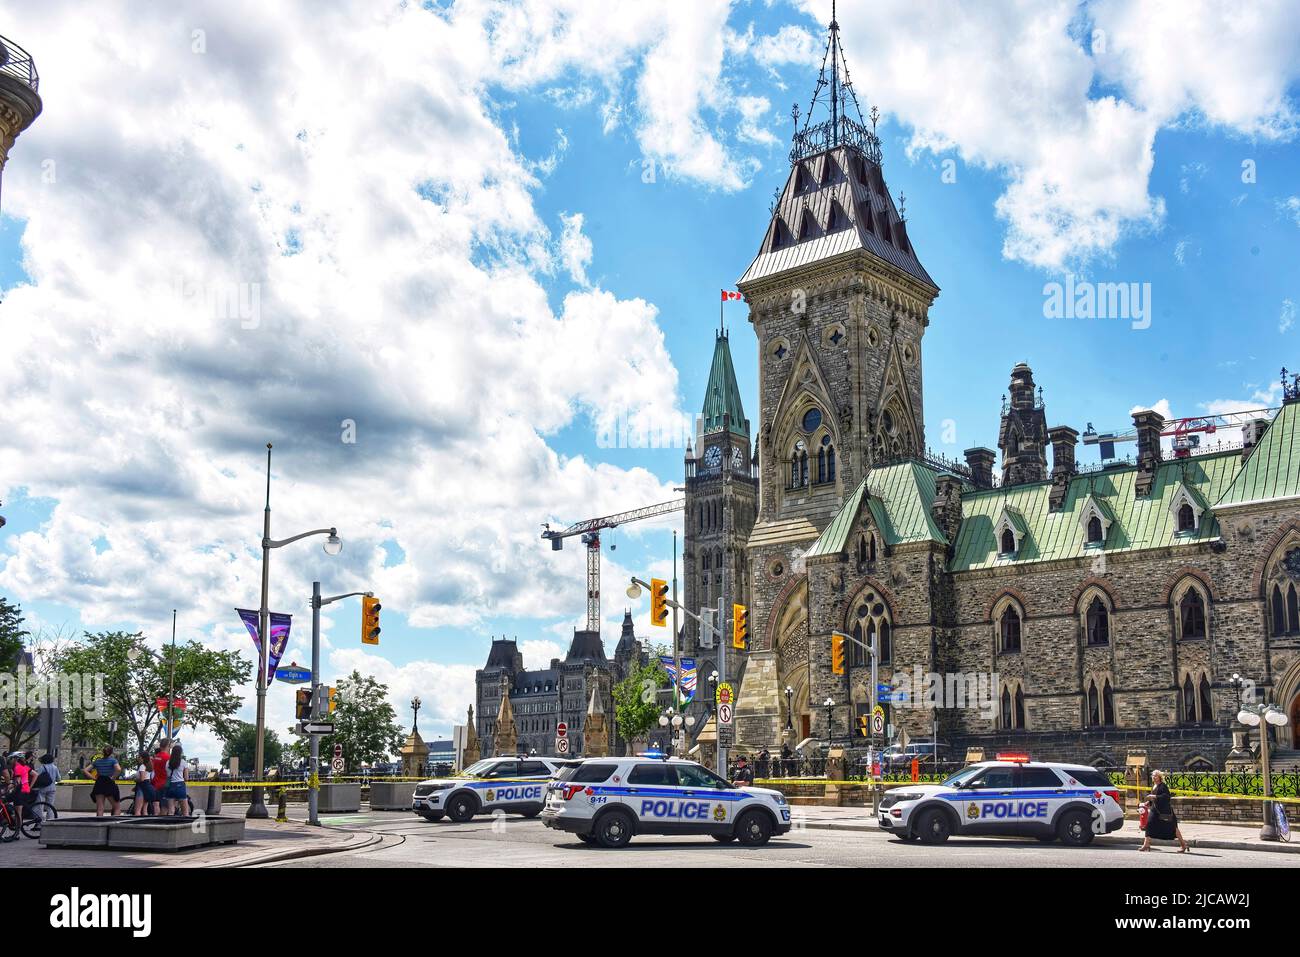 Ottawa, Kanada - 11. Juni 2022: Die Polizei von Ottawa sperrte den Eingang zur Wellington Street und anderen Straßen in der Nähe, nachdem auf dem Parliament Hill aufgrund einer nicht offengelegten möglichen Bedrohung eine Evakuierung und ein Schutzhaus angeordnet worden war. Der Befehl wurde später am Nachmittag aufgehoben. Parliament Hill ist eine beliebte Touristenattraktion. Stockfoto